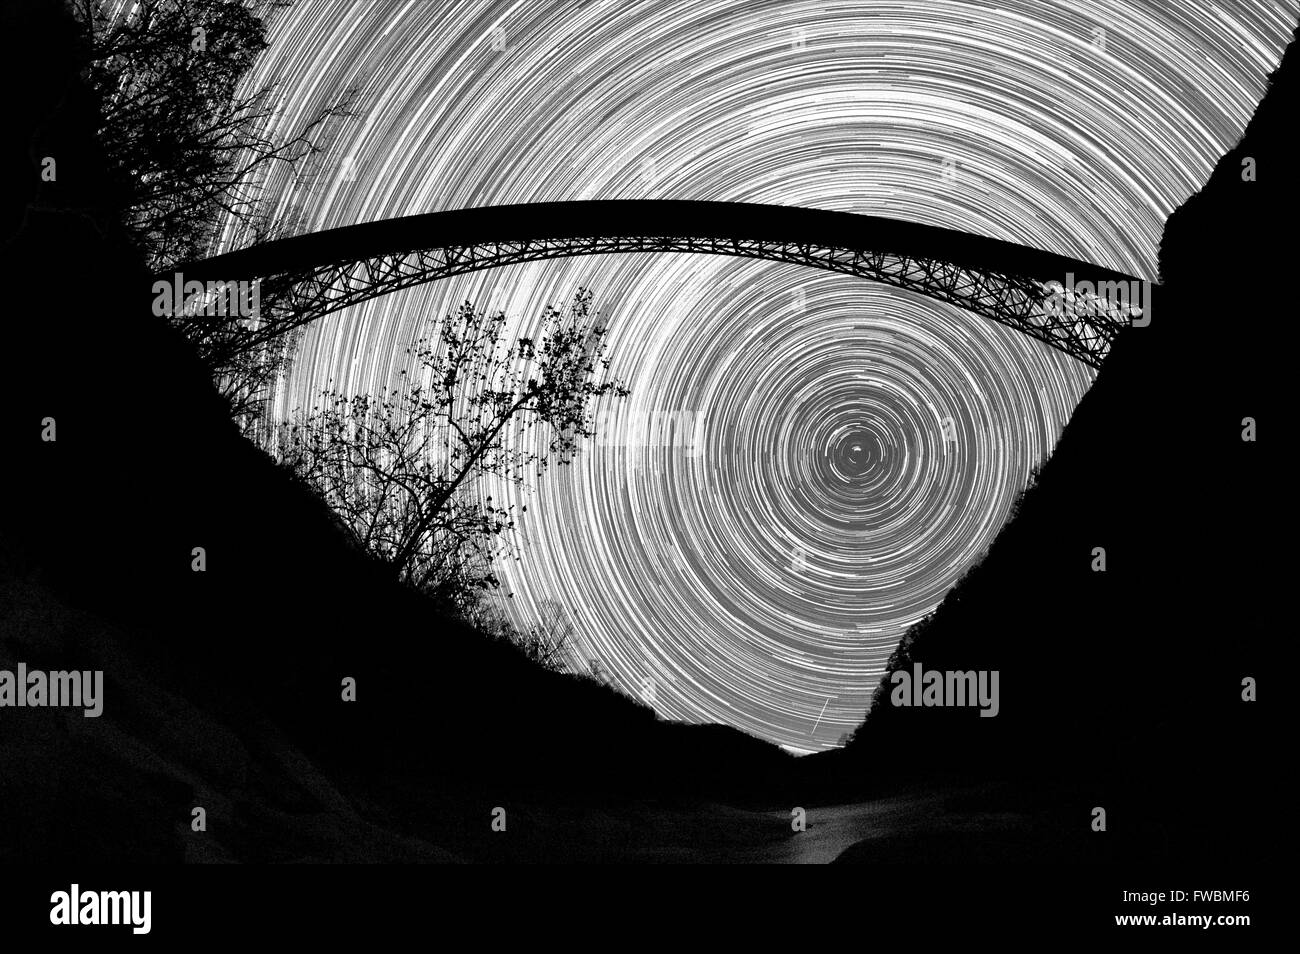 El movimiento de las estrellas en el cielo congelado cuelgan por debajo de un puente de acero arco gigante sobre un barranco en blanco y negro, New River Gorge, West Virginia. Foto de stock